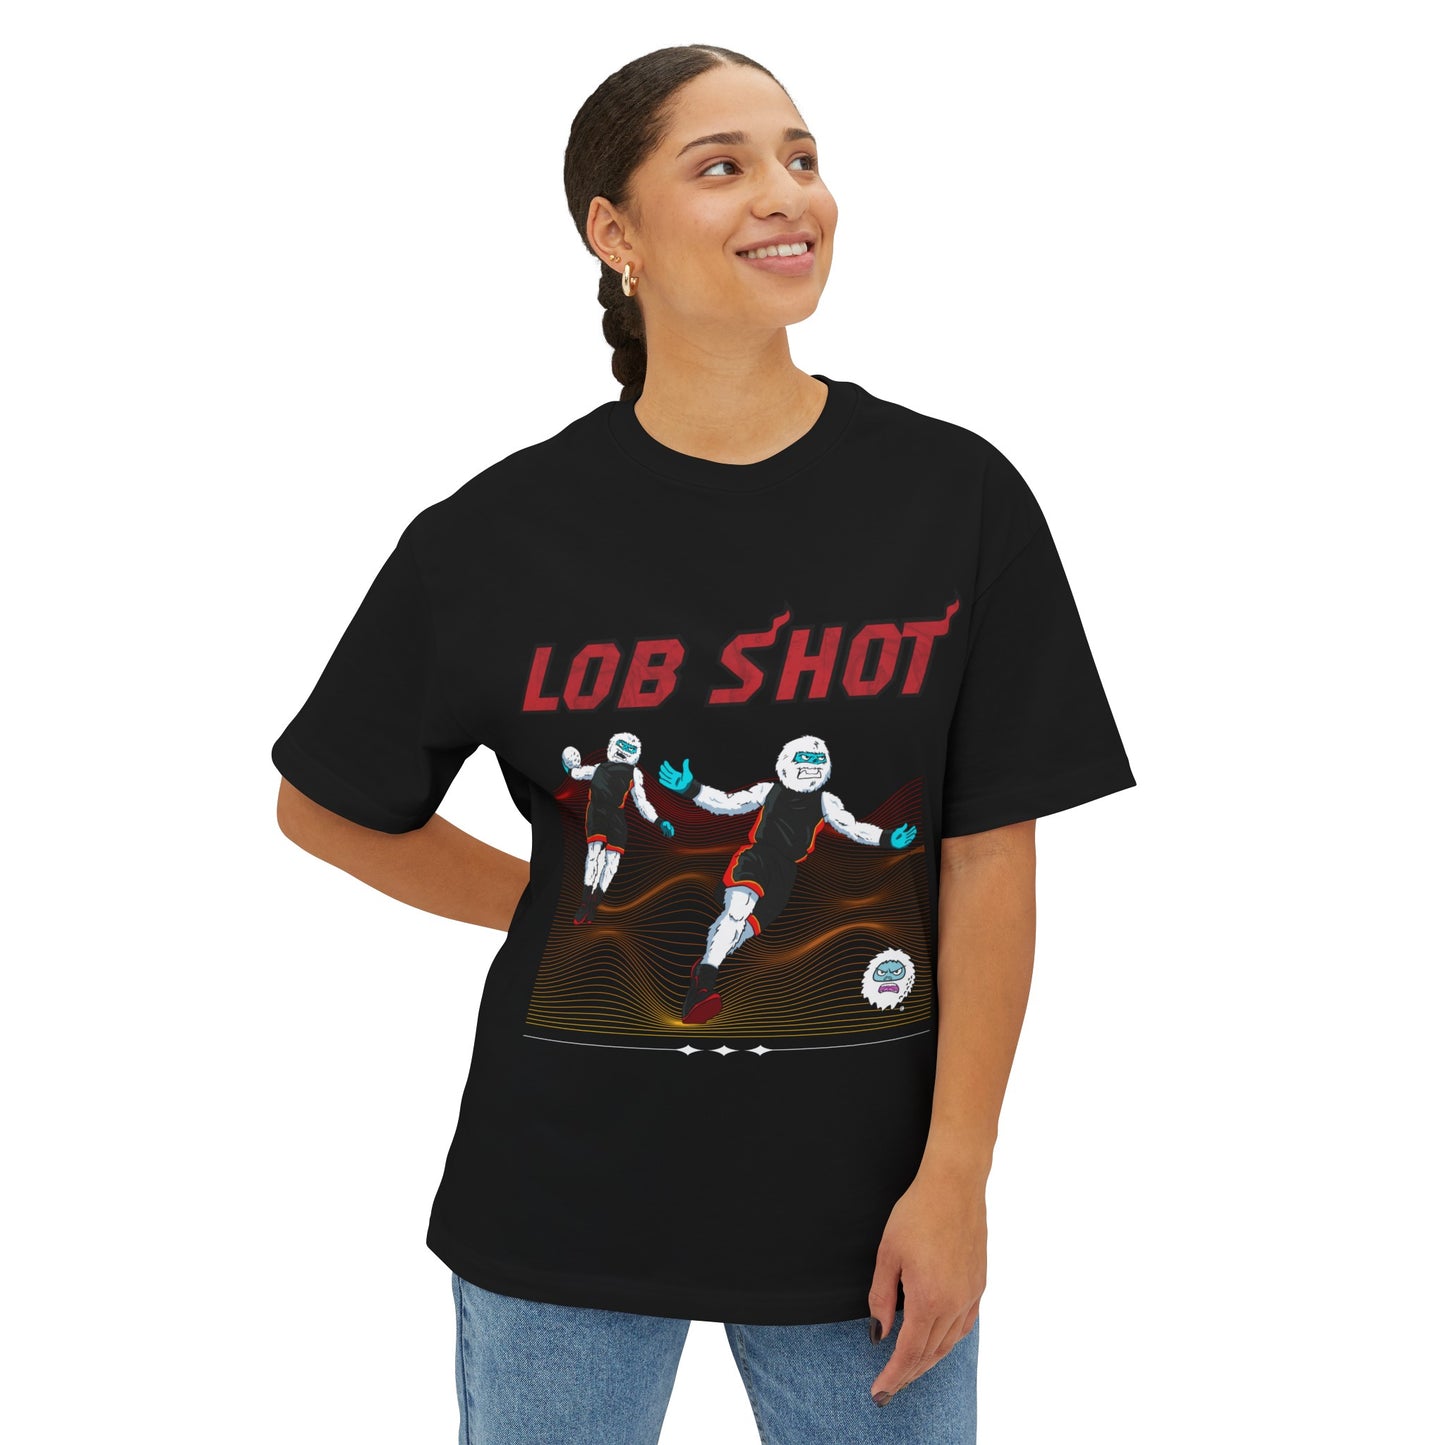 Copy of Lob Shot T-Shirt